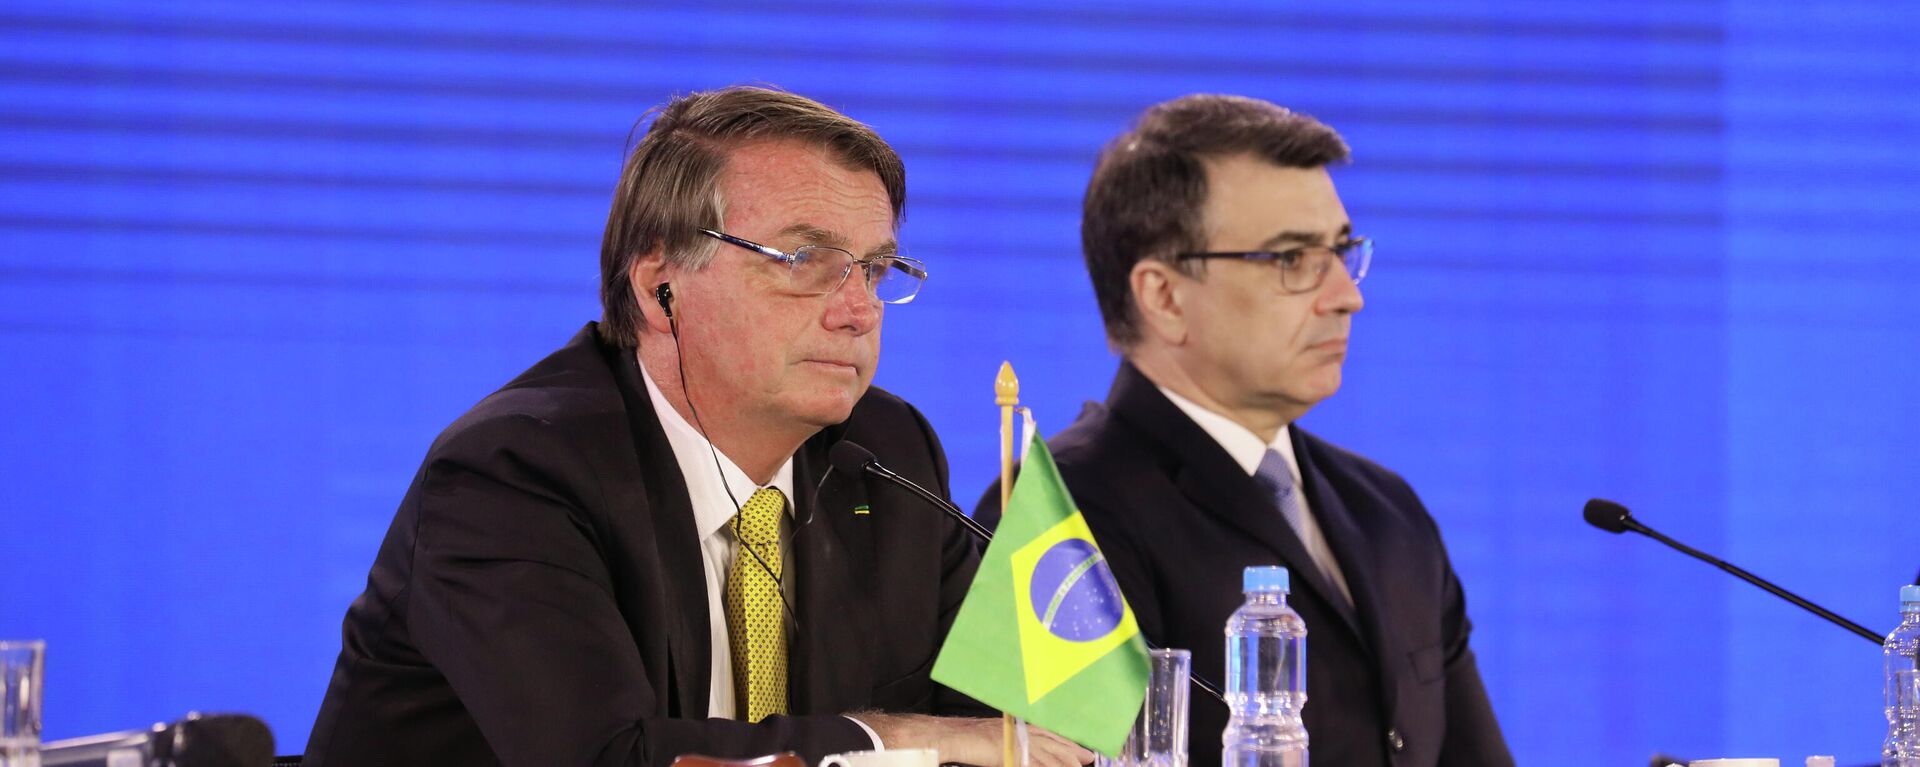 Presidente do Brasil, Jair Bolsonaro (à esquerda), e ministro das Relações Exteriores brasileiro, Carlos França, na LIX Cúpula de Chefes de Estado do Mercosul e Estados Associados, em 17 de dezembro de 2021 - Sputnik Brasil, 1920, 01.06.2022